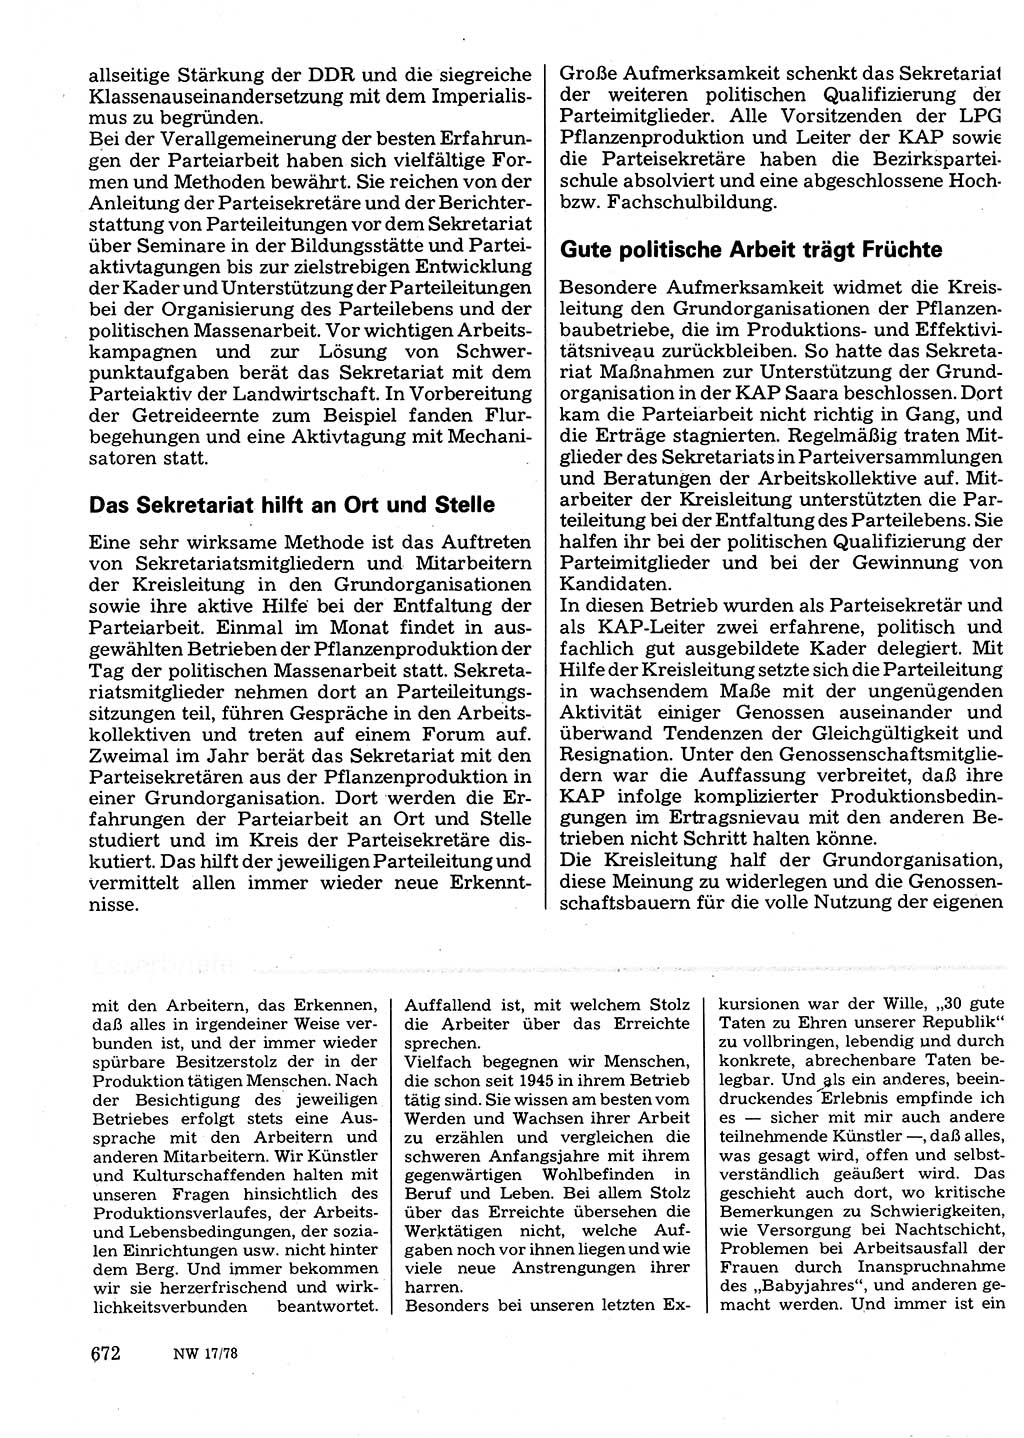 Neuer Weg (NW), Organ des Zentralkomitees (ZK) der SED (Sozialistische Einheitspartei Deutschlands) für Fragen des Parteilebens, 33. Jahrgang [Deutsche Demokratische Republik (DDR)] 1978, Seite 672 (NW ZK SED DDR 1978, S. 672)